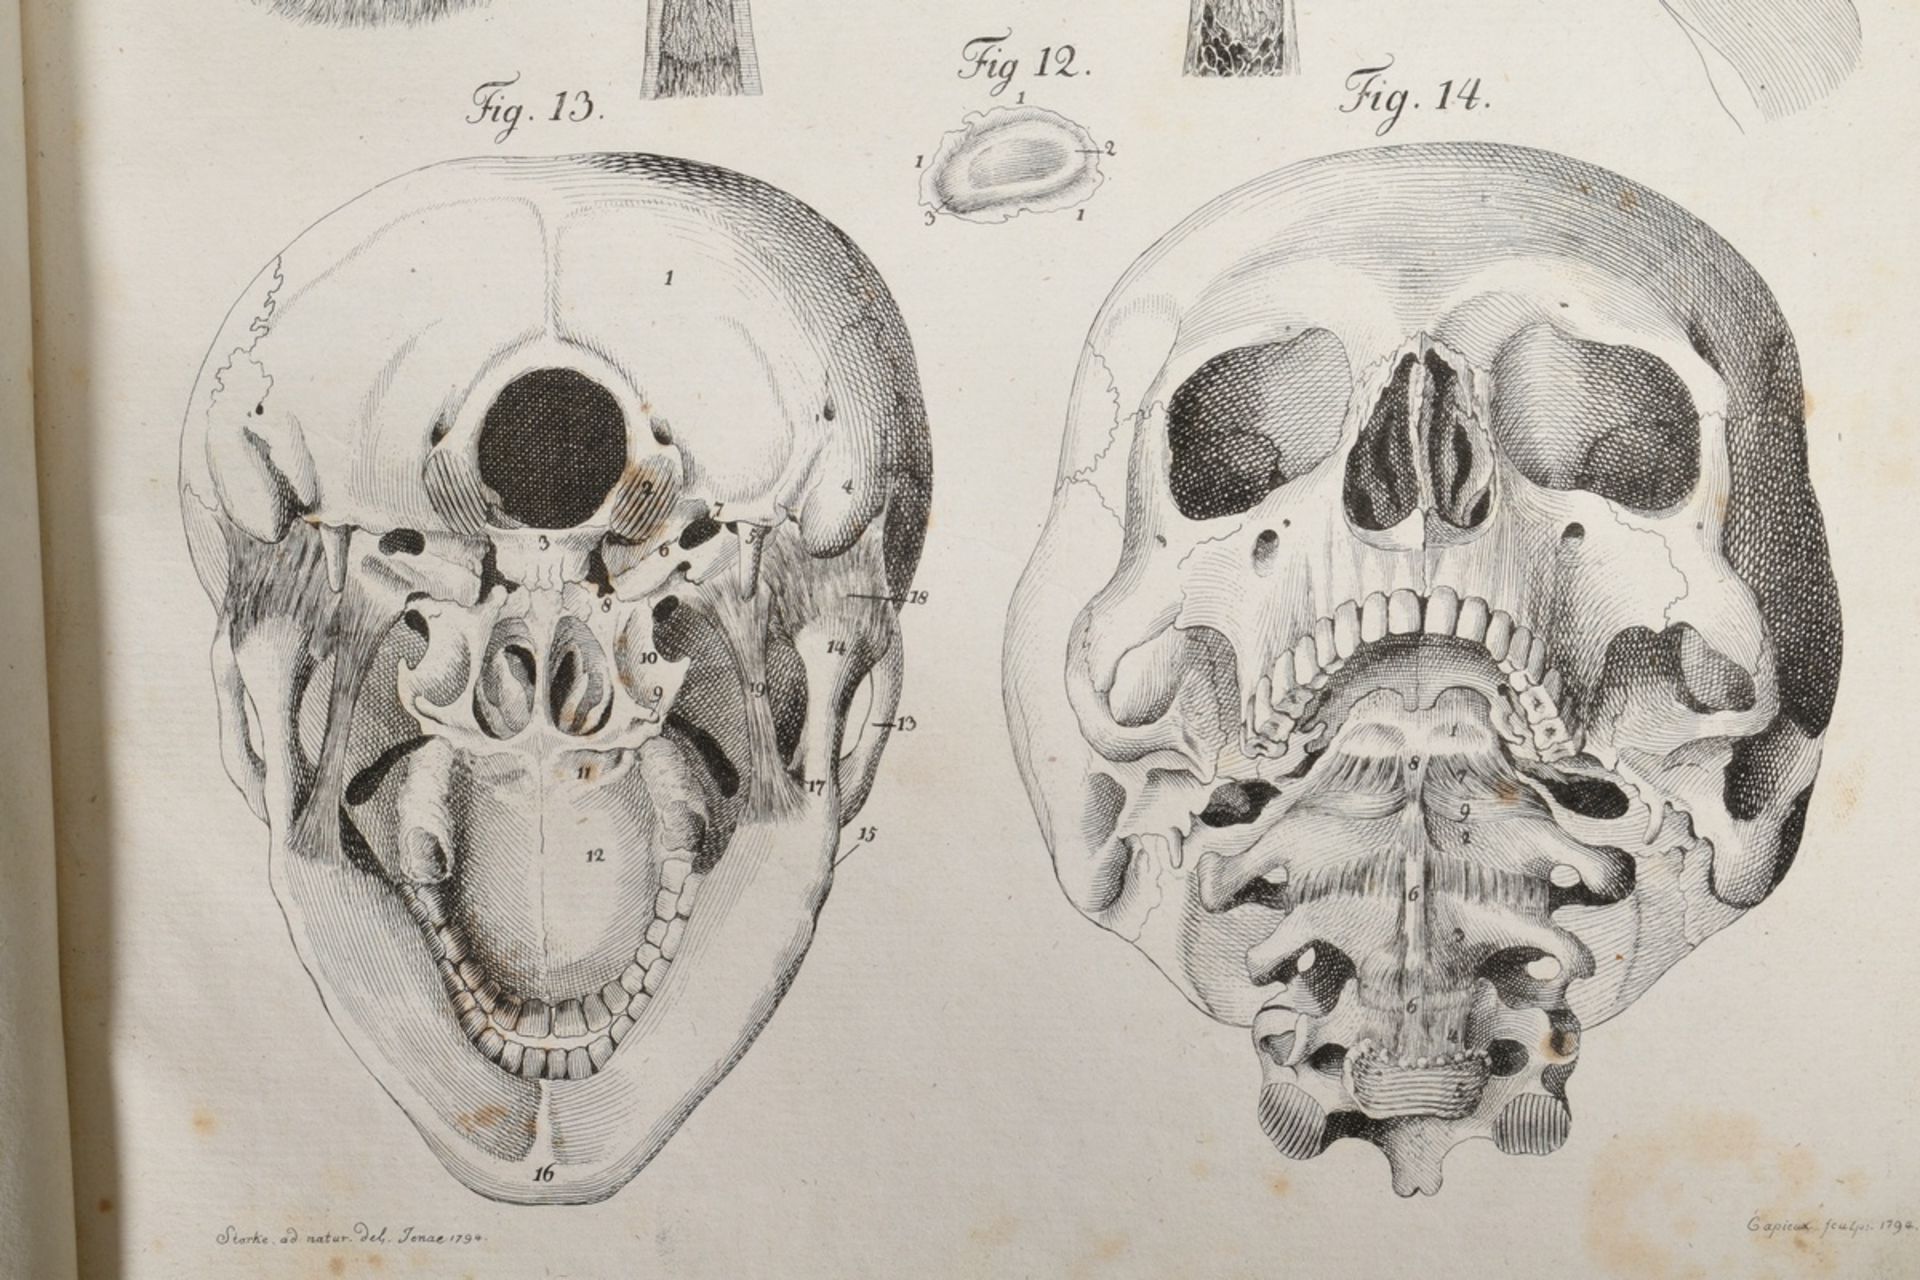 2 volumes Justus Christian von Loder "Tabularum Anatomicarum/ Volumen I und II" 1803, half-leather  - Image 8 of 8